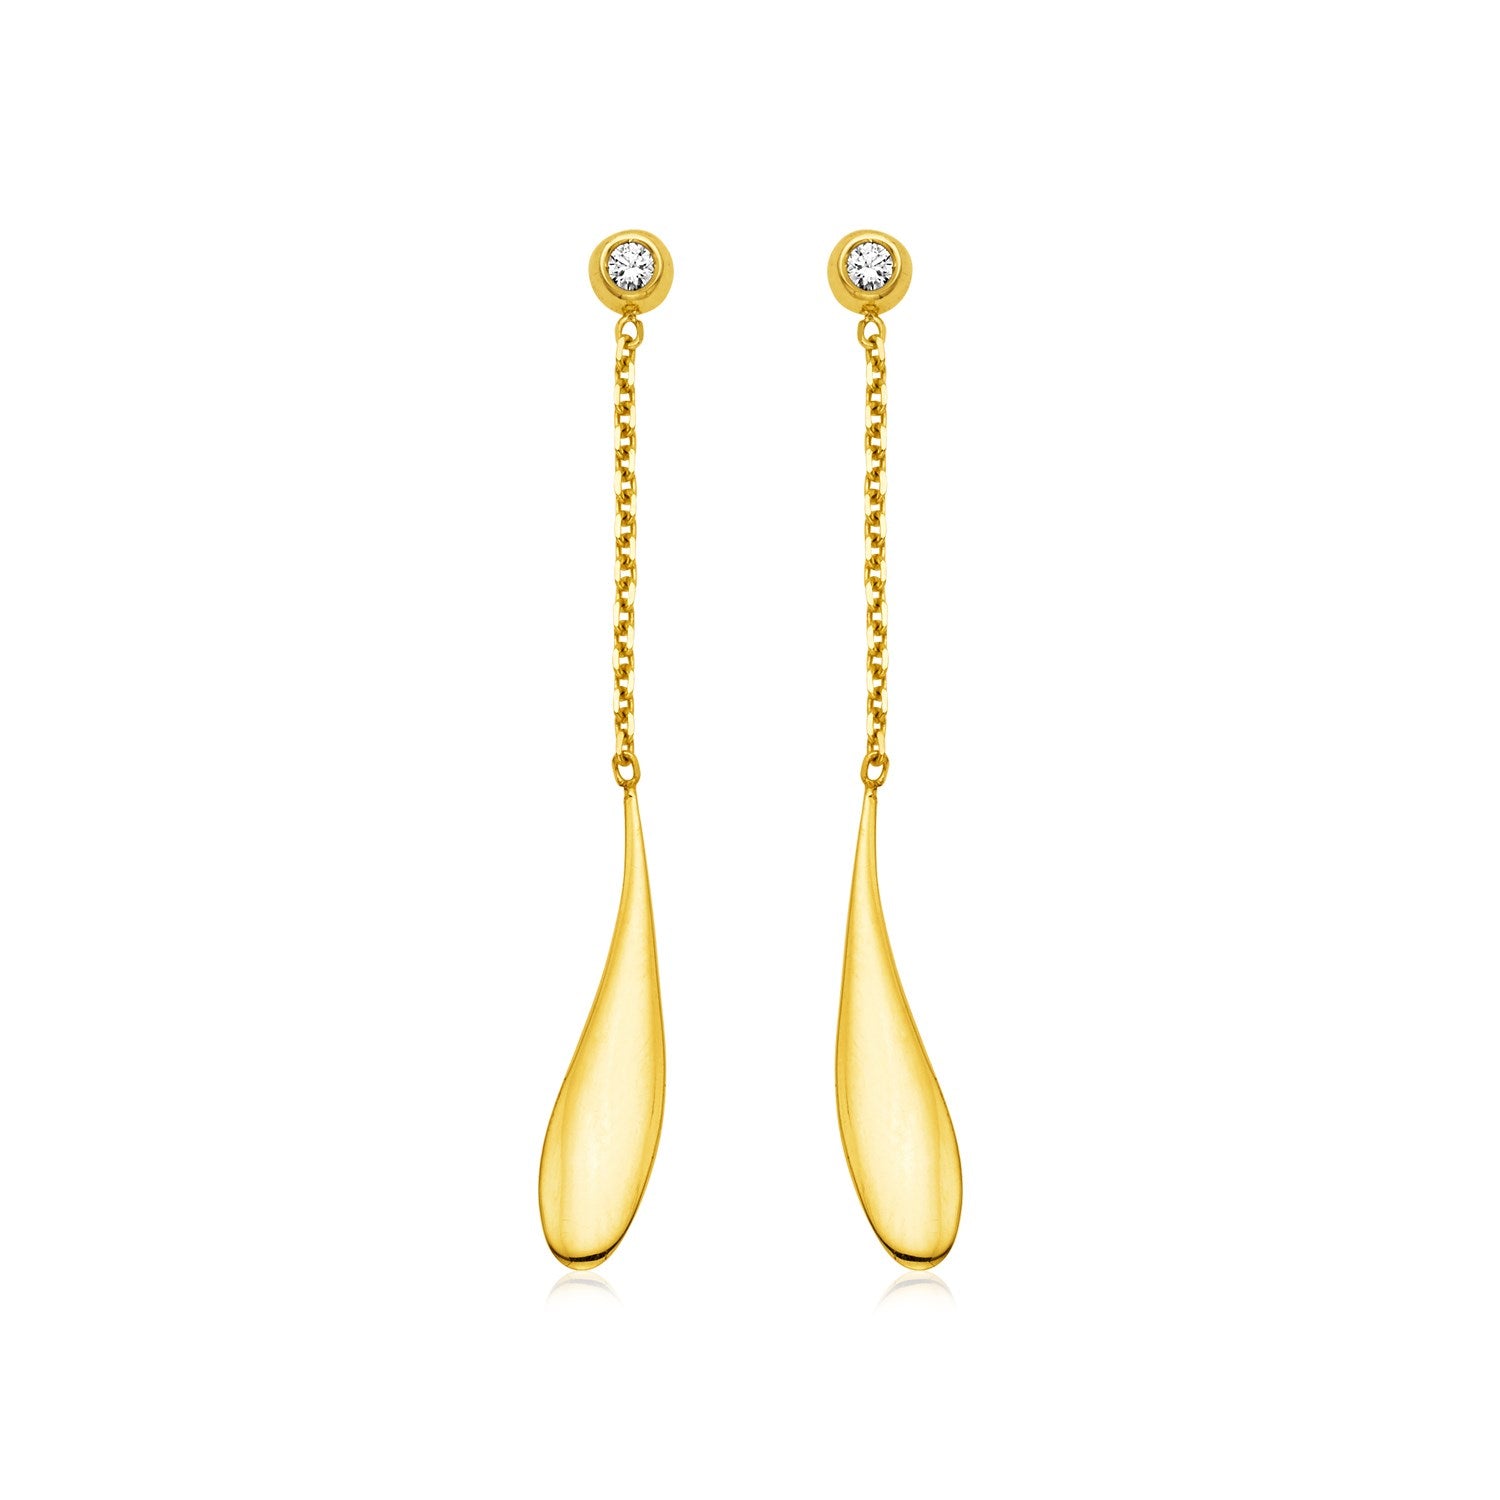 14k Yellow Gold Teardrop Earrings with Diamonds